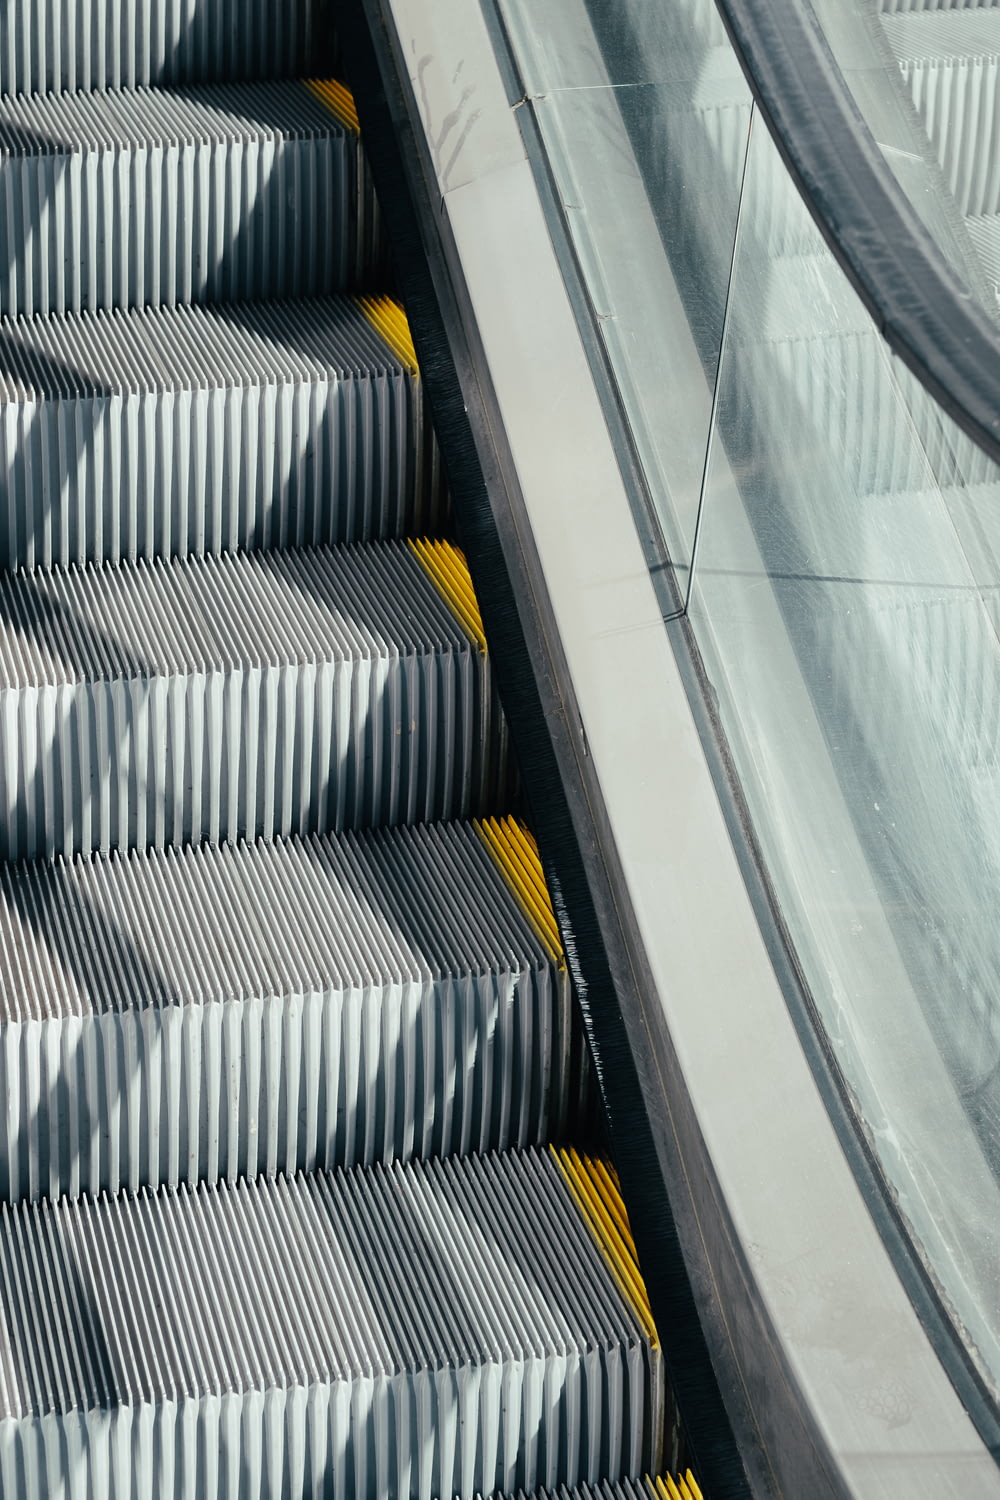 silver and black escalator